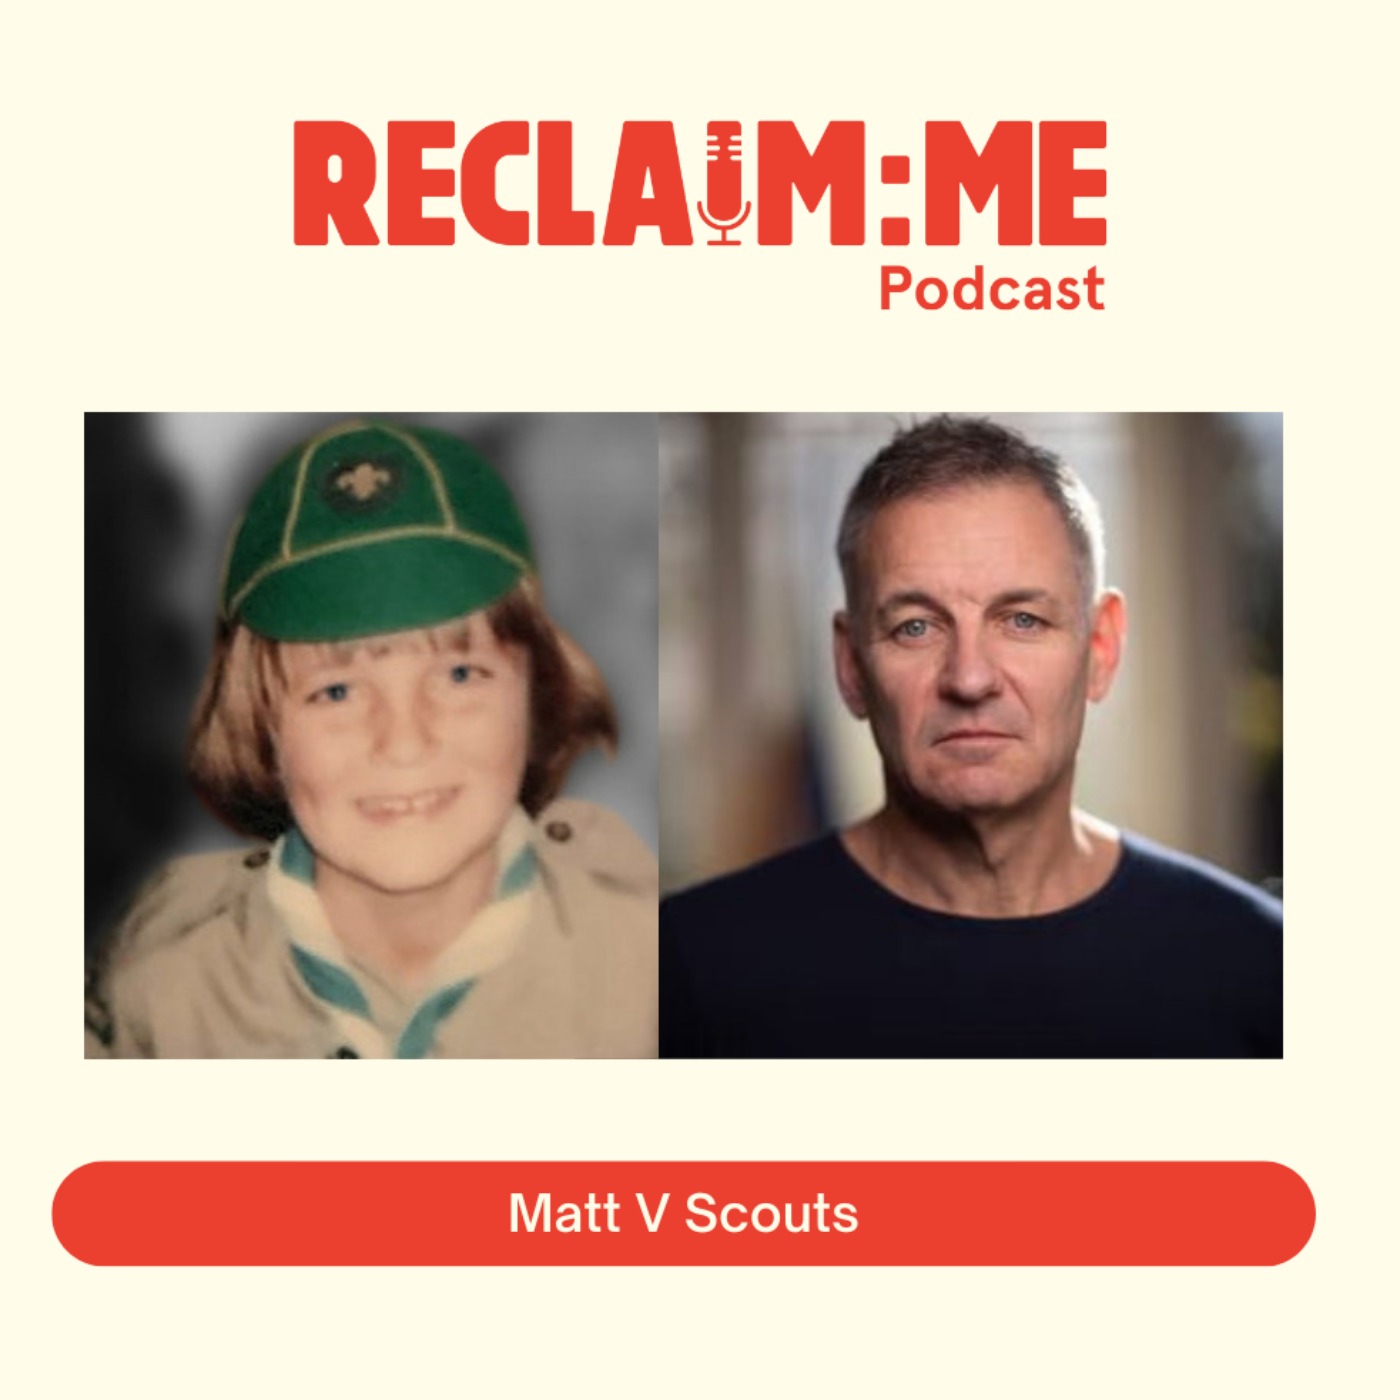 Episode 98 - Matt V Scouts with Matthew Barker